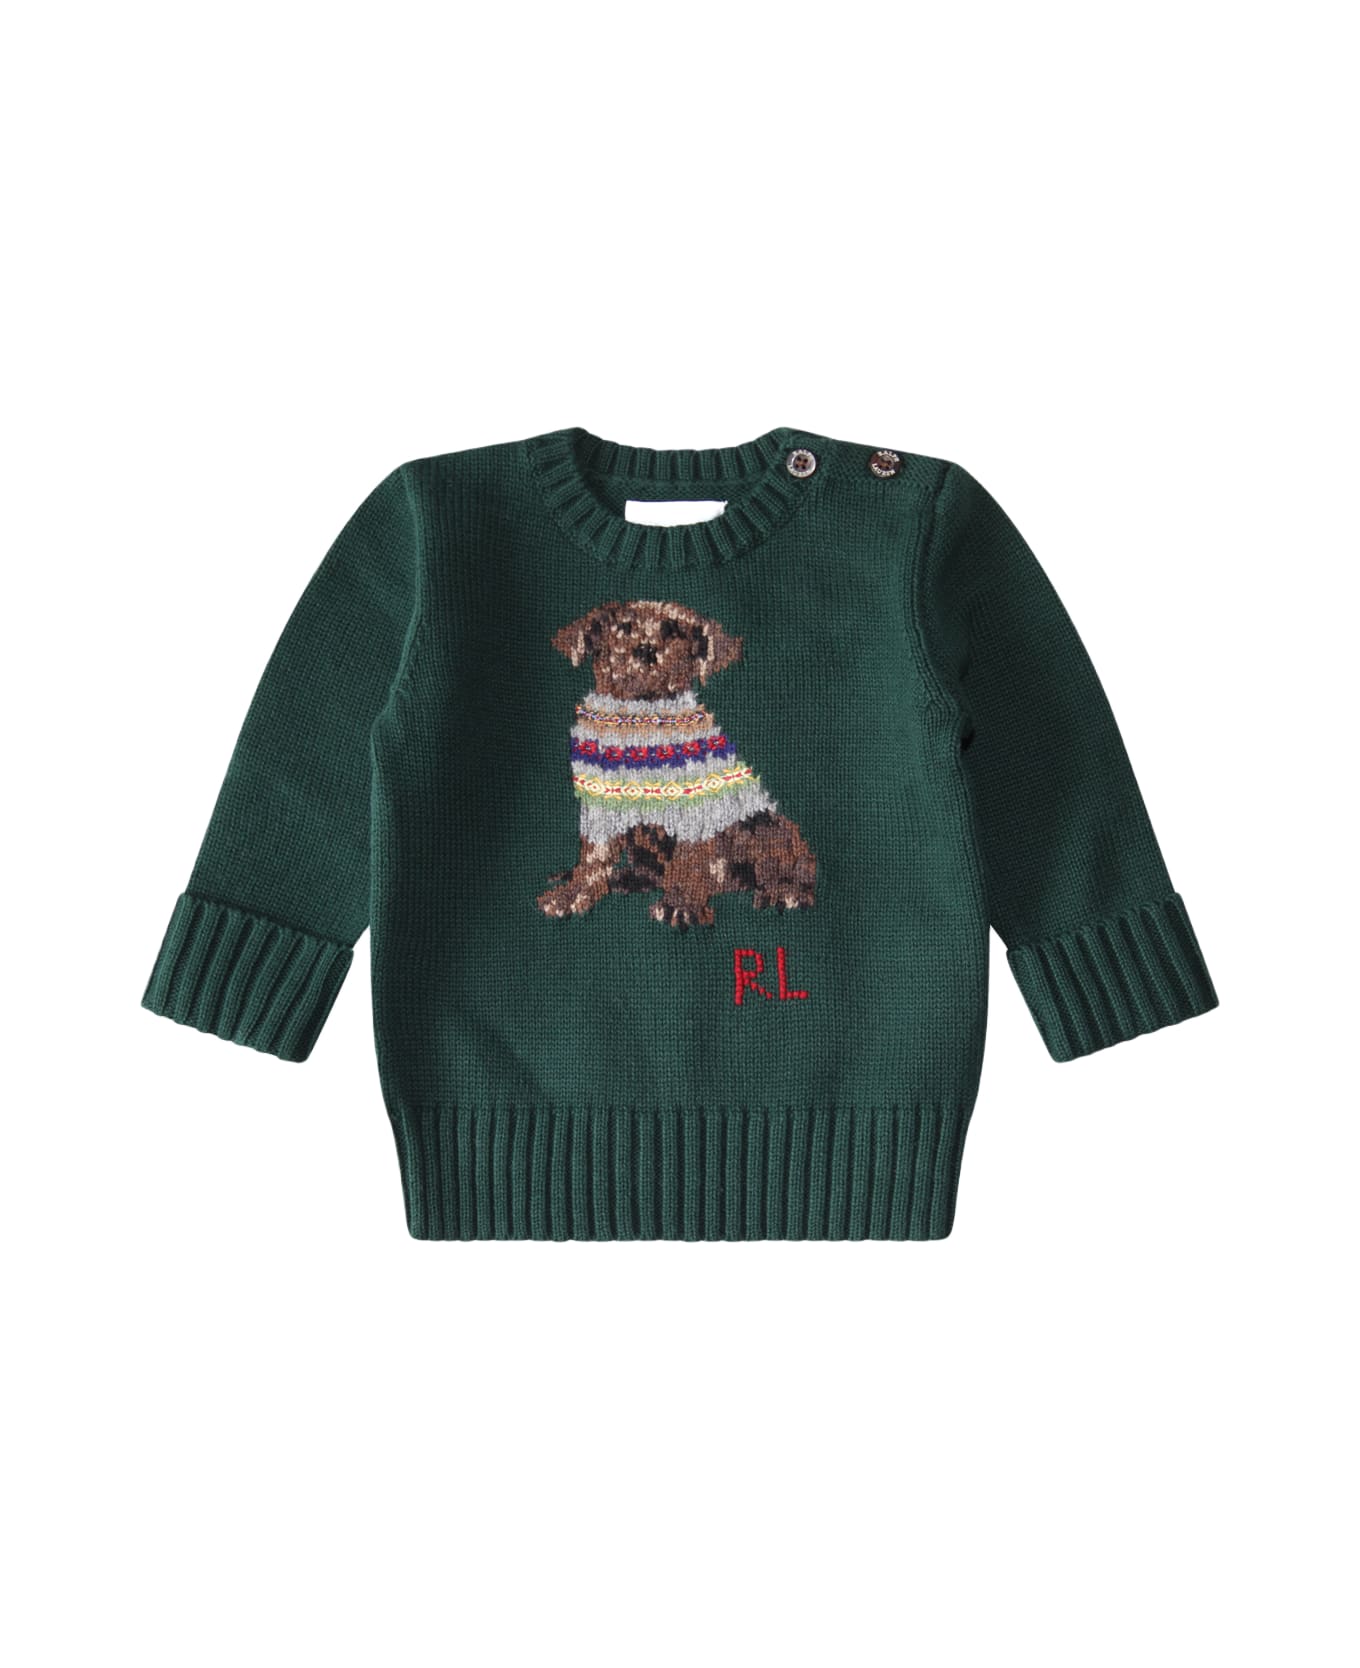 Polo Ralph Lauren Green Cotton Sweater - Green